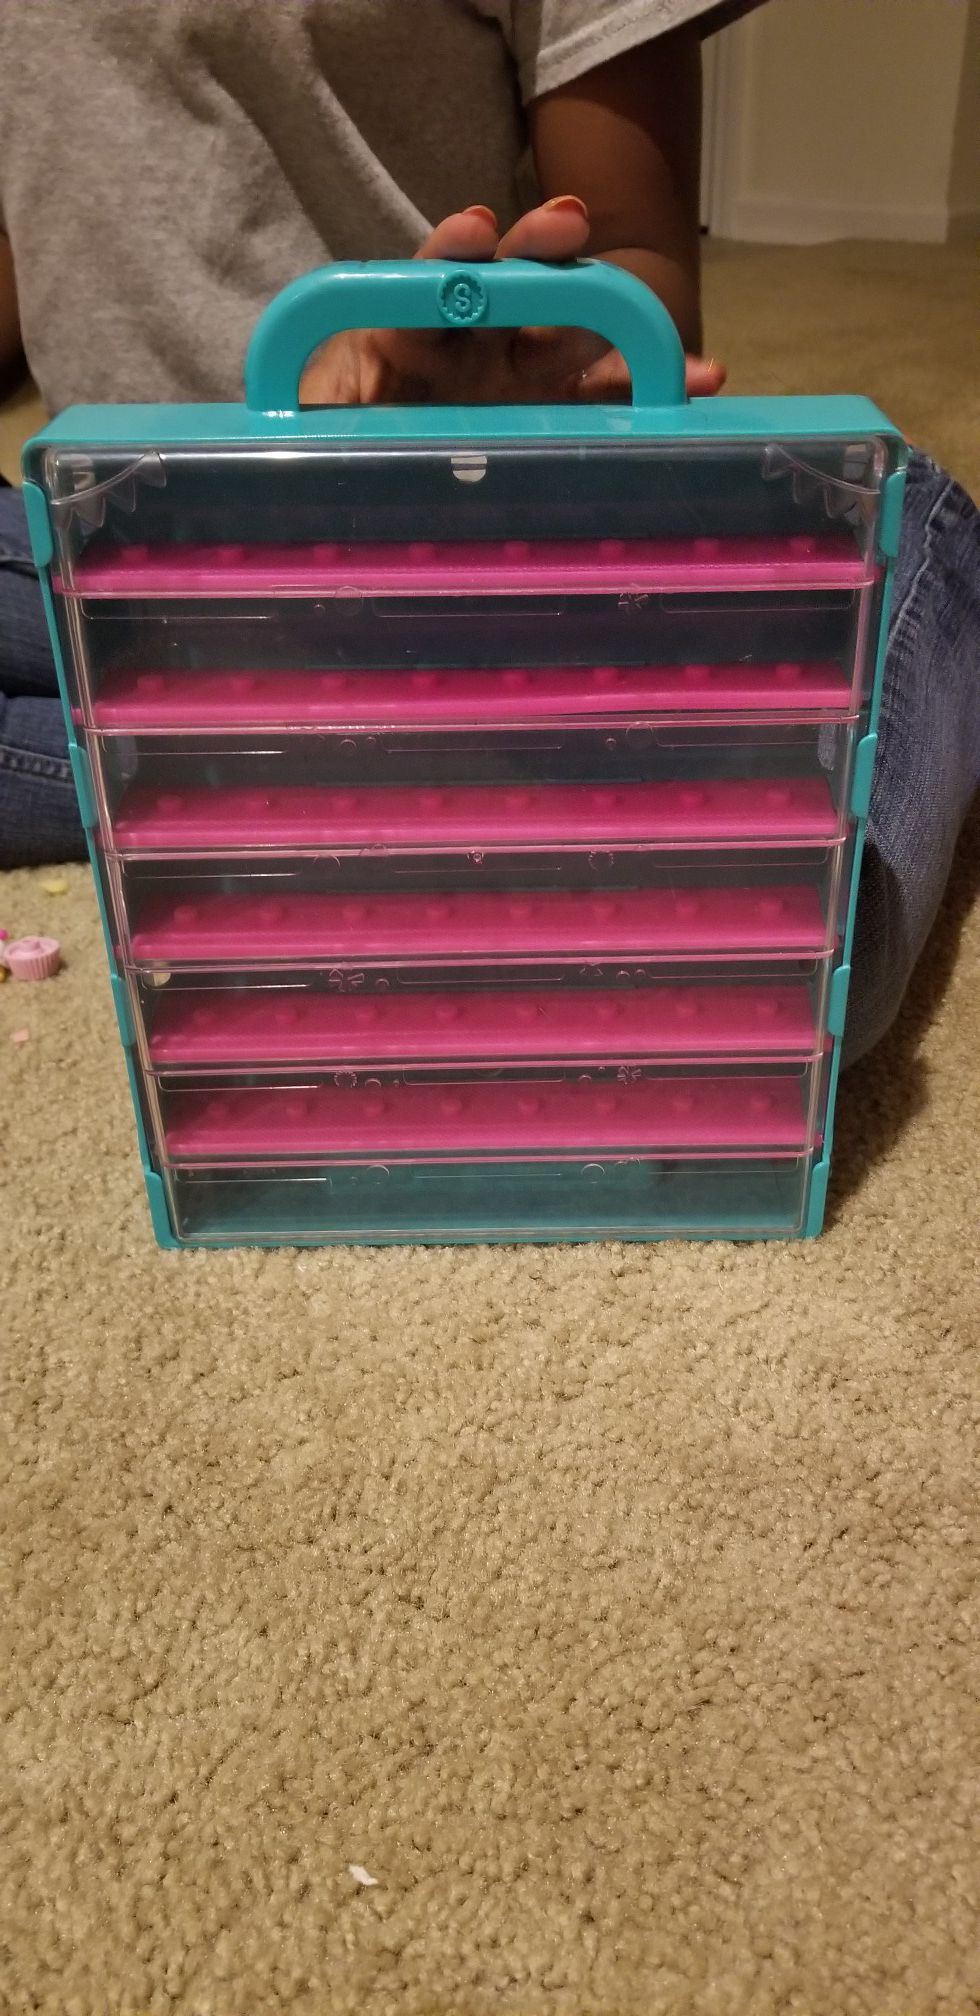 Shopkins Case & Pencil box of shopkins